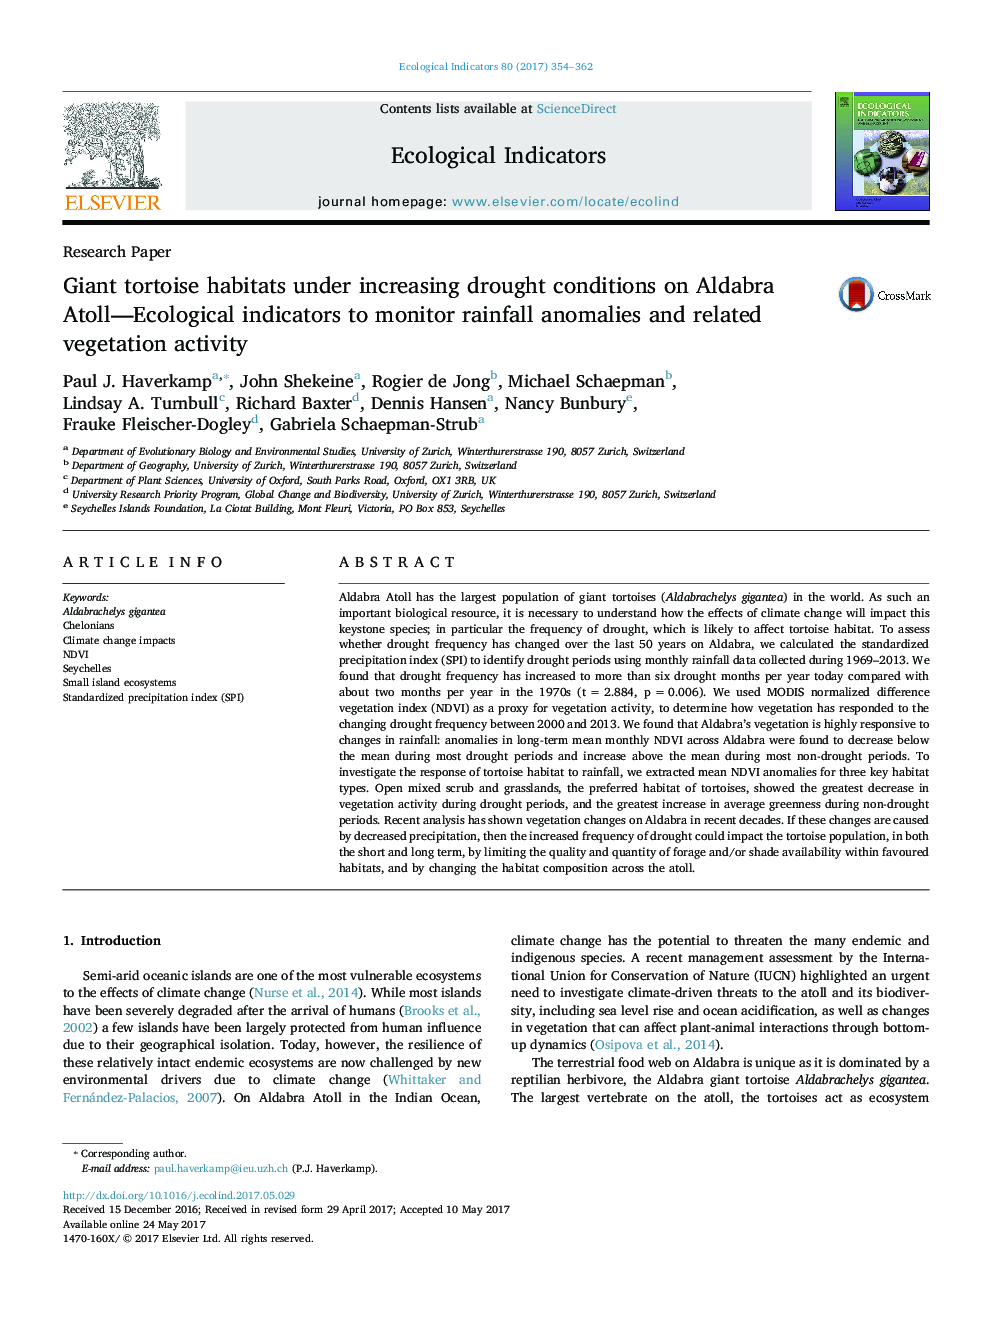 زیستگاه لاک پشتی تحقیقاتی تحت شرایط رو به رشد خشکسالی بر شاخص های الدابرا آتول-اکولوژیکی برای نظارت بر ناهنجاری های بارش و فعالیت گیاهان مرتبط 